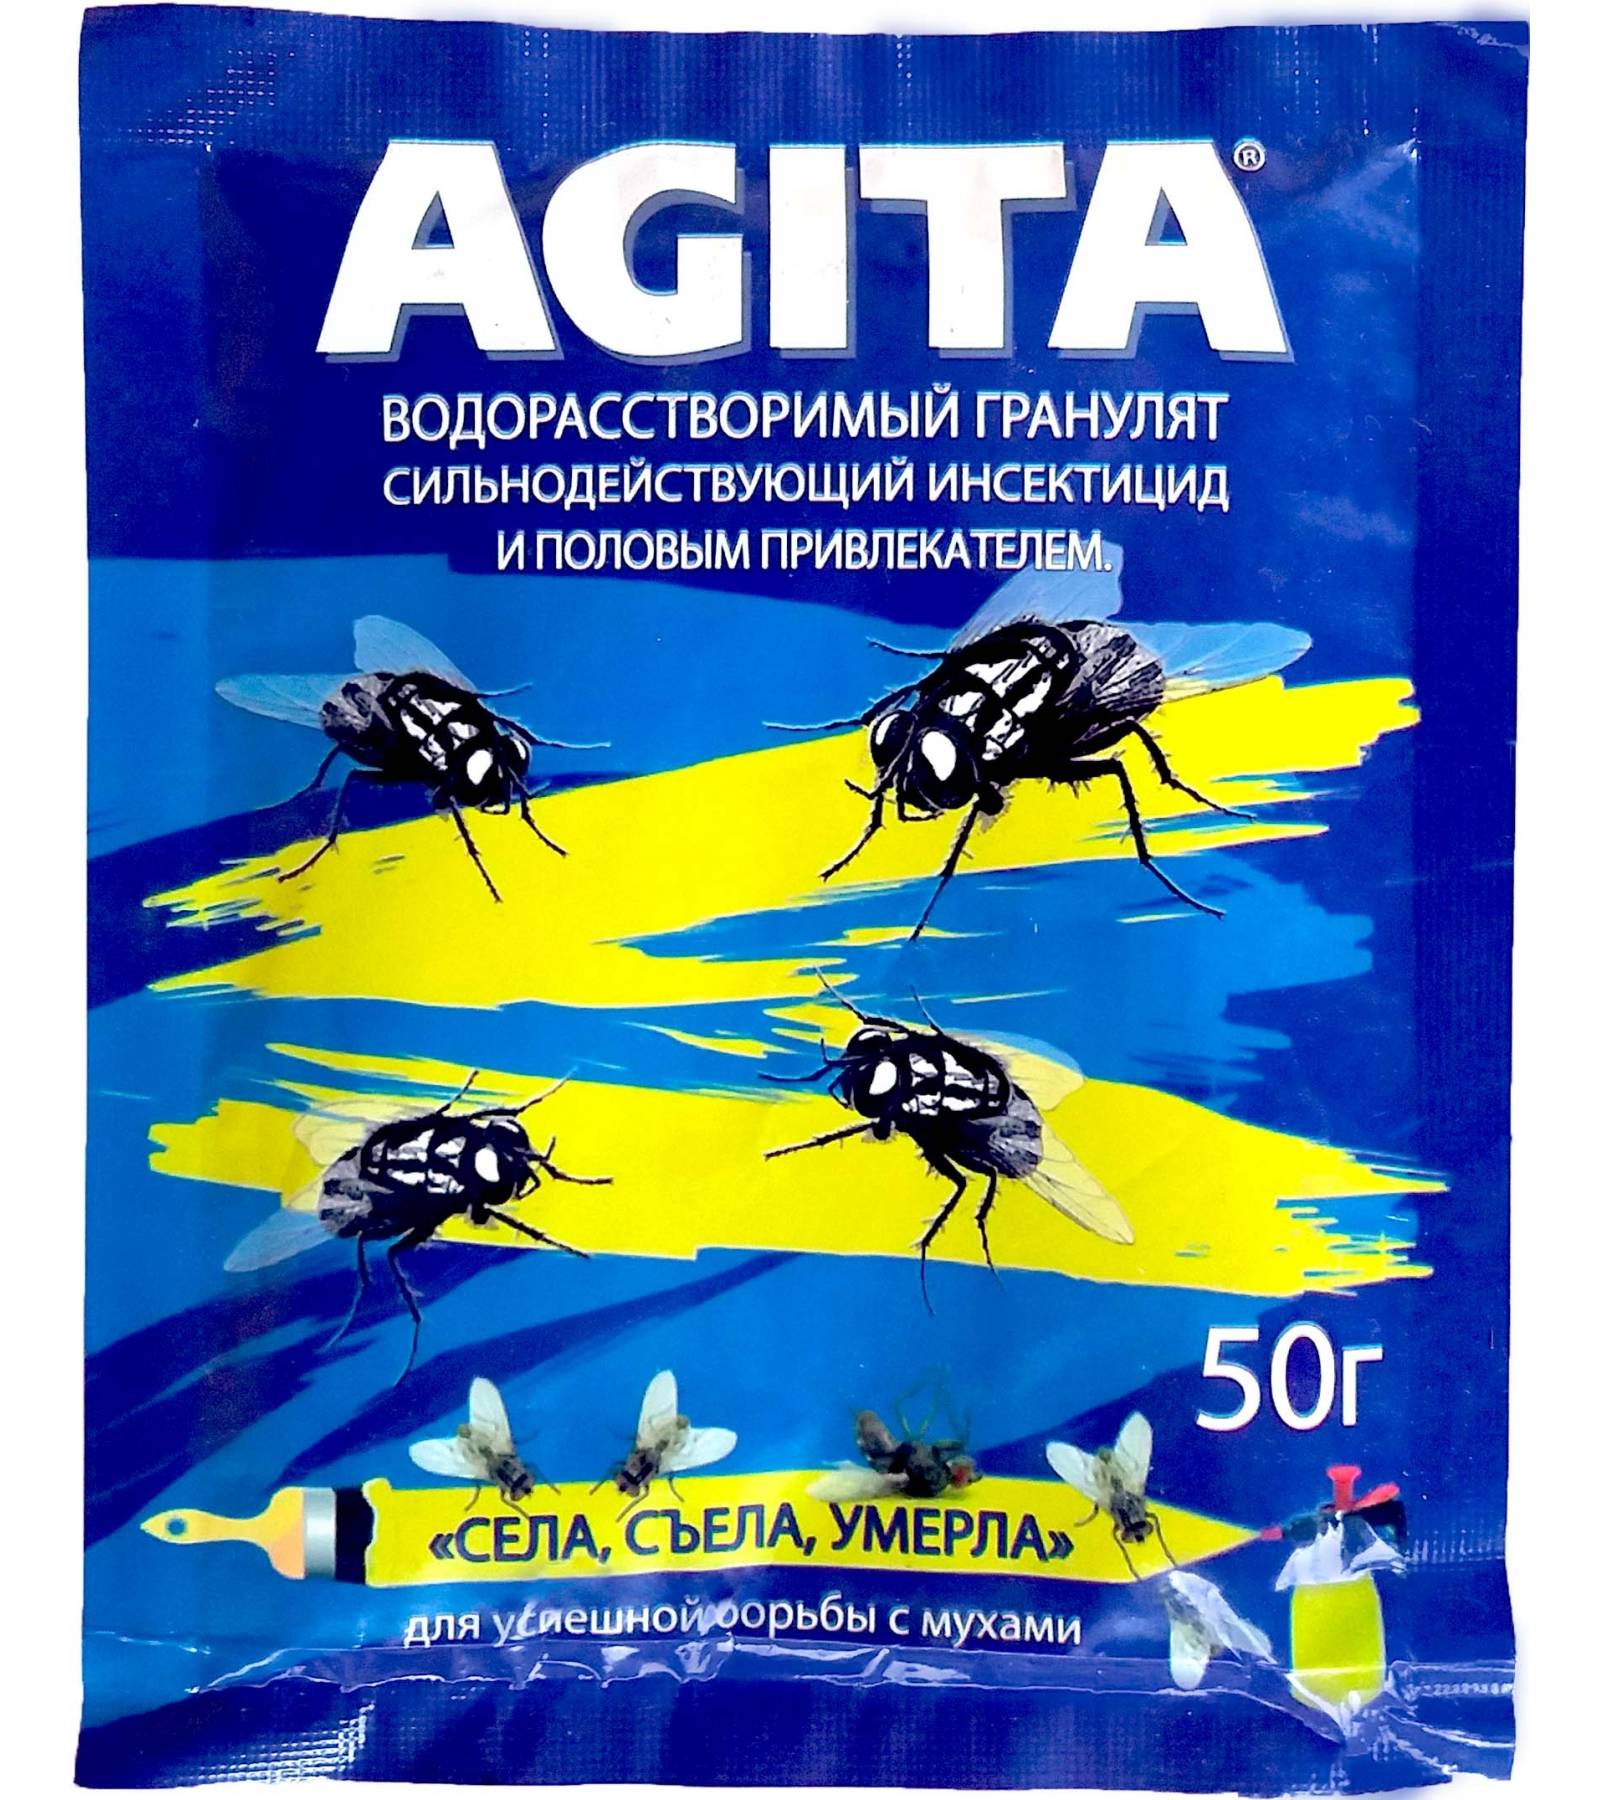 Средство от мух "агита": свойства, инструкция, отзывы